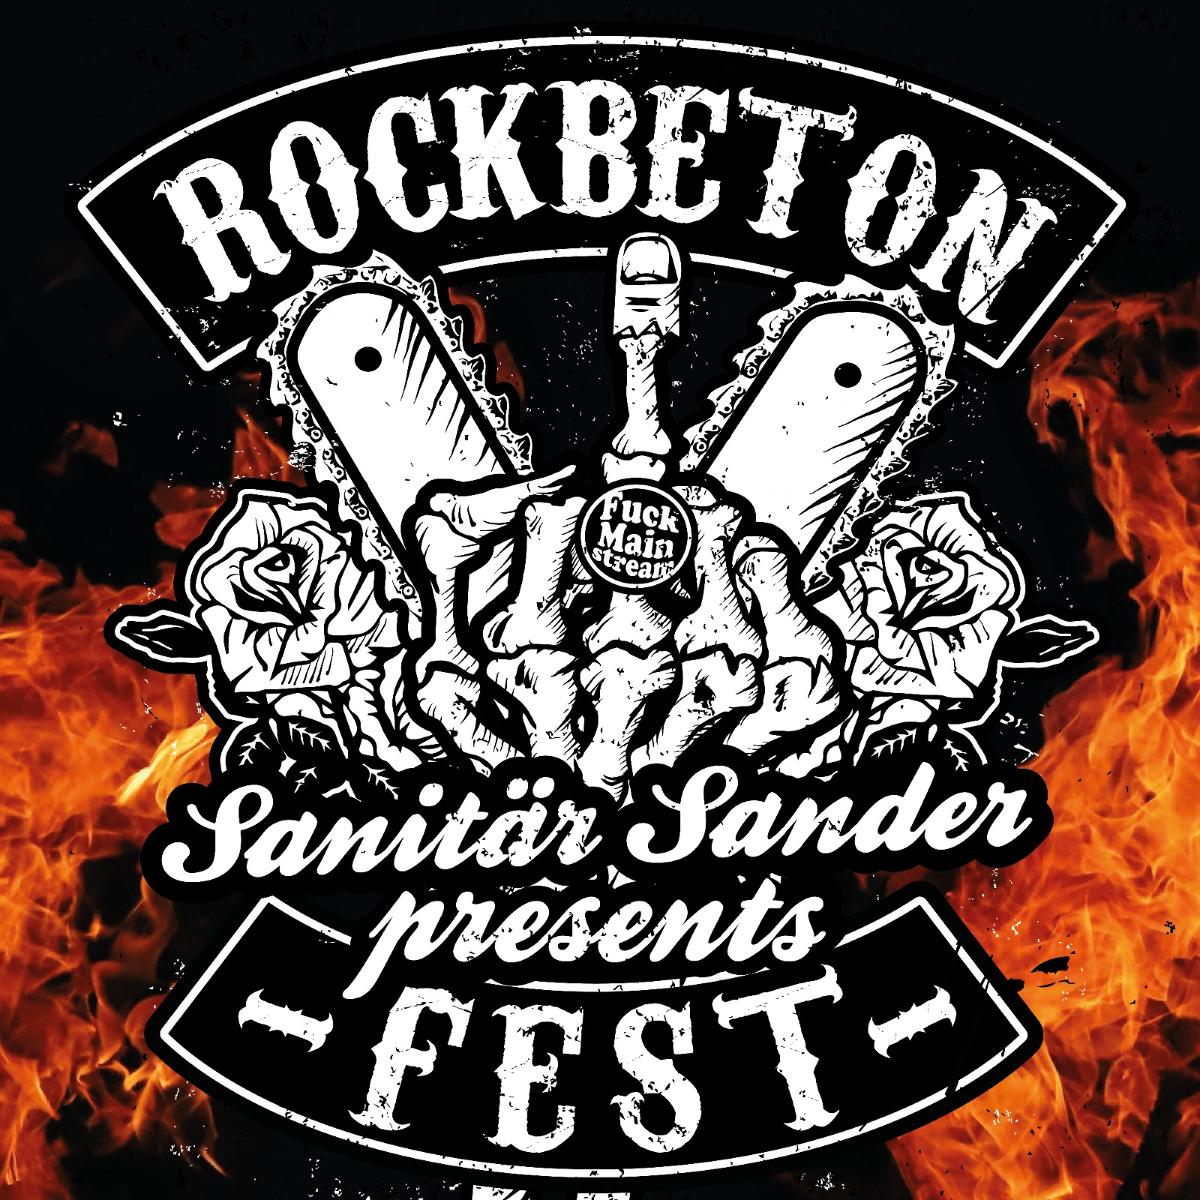 Rockbeton and the Mörtels, eine regionale Rock-Band, werden euch mit befreundeten Bands einen erstklassigen Abend voller Rock and Roll servieren! 